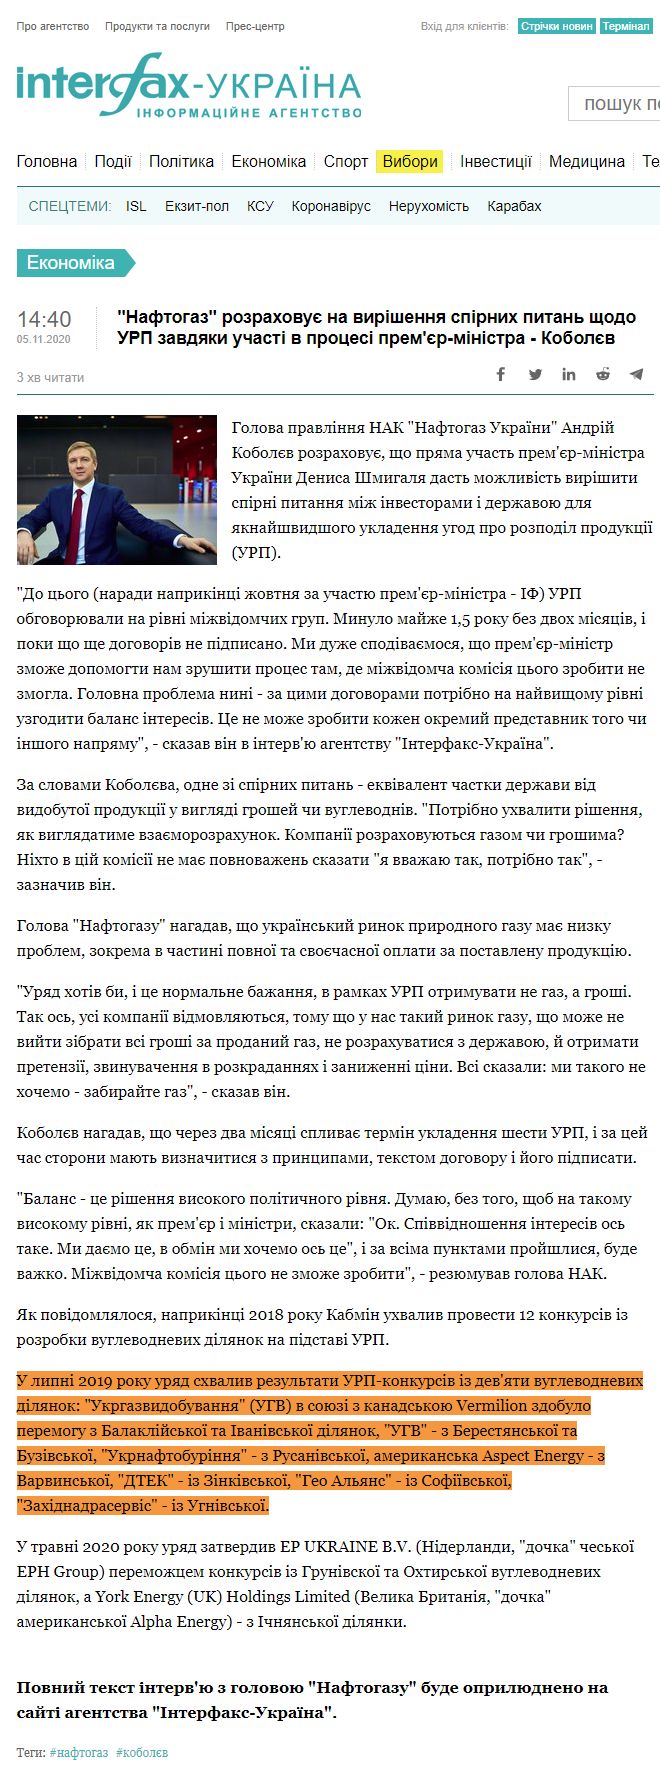 https://ua.interfax.com.ua/news/economic/701327.html